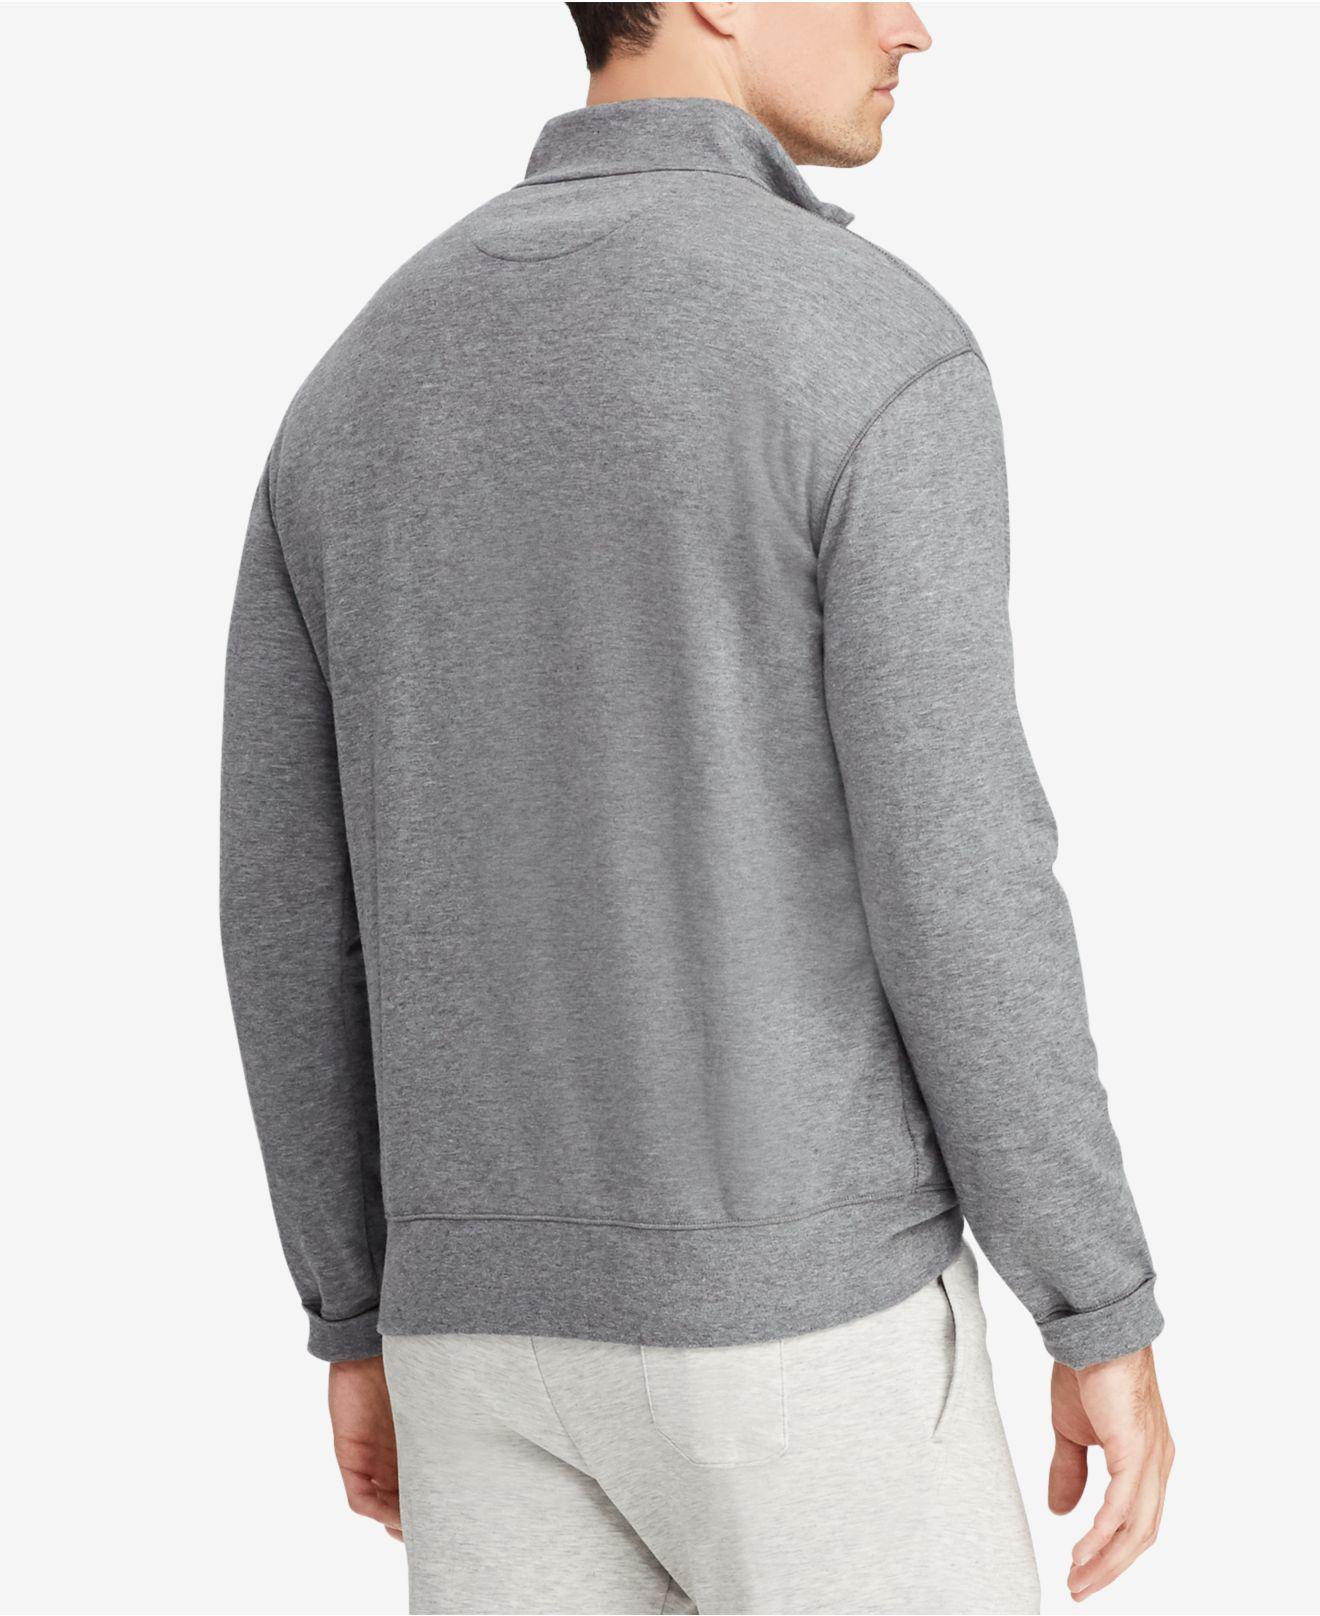 Polo Ralph Lauren Quarter-zip Pullover Sweater in Gray for Men - Lyst